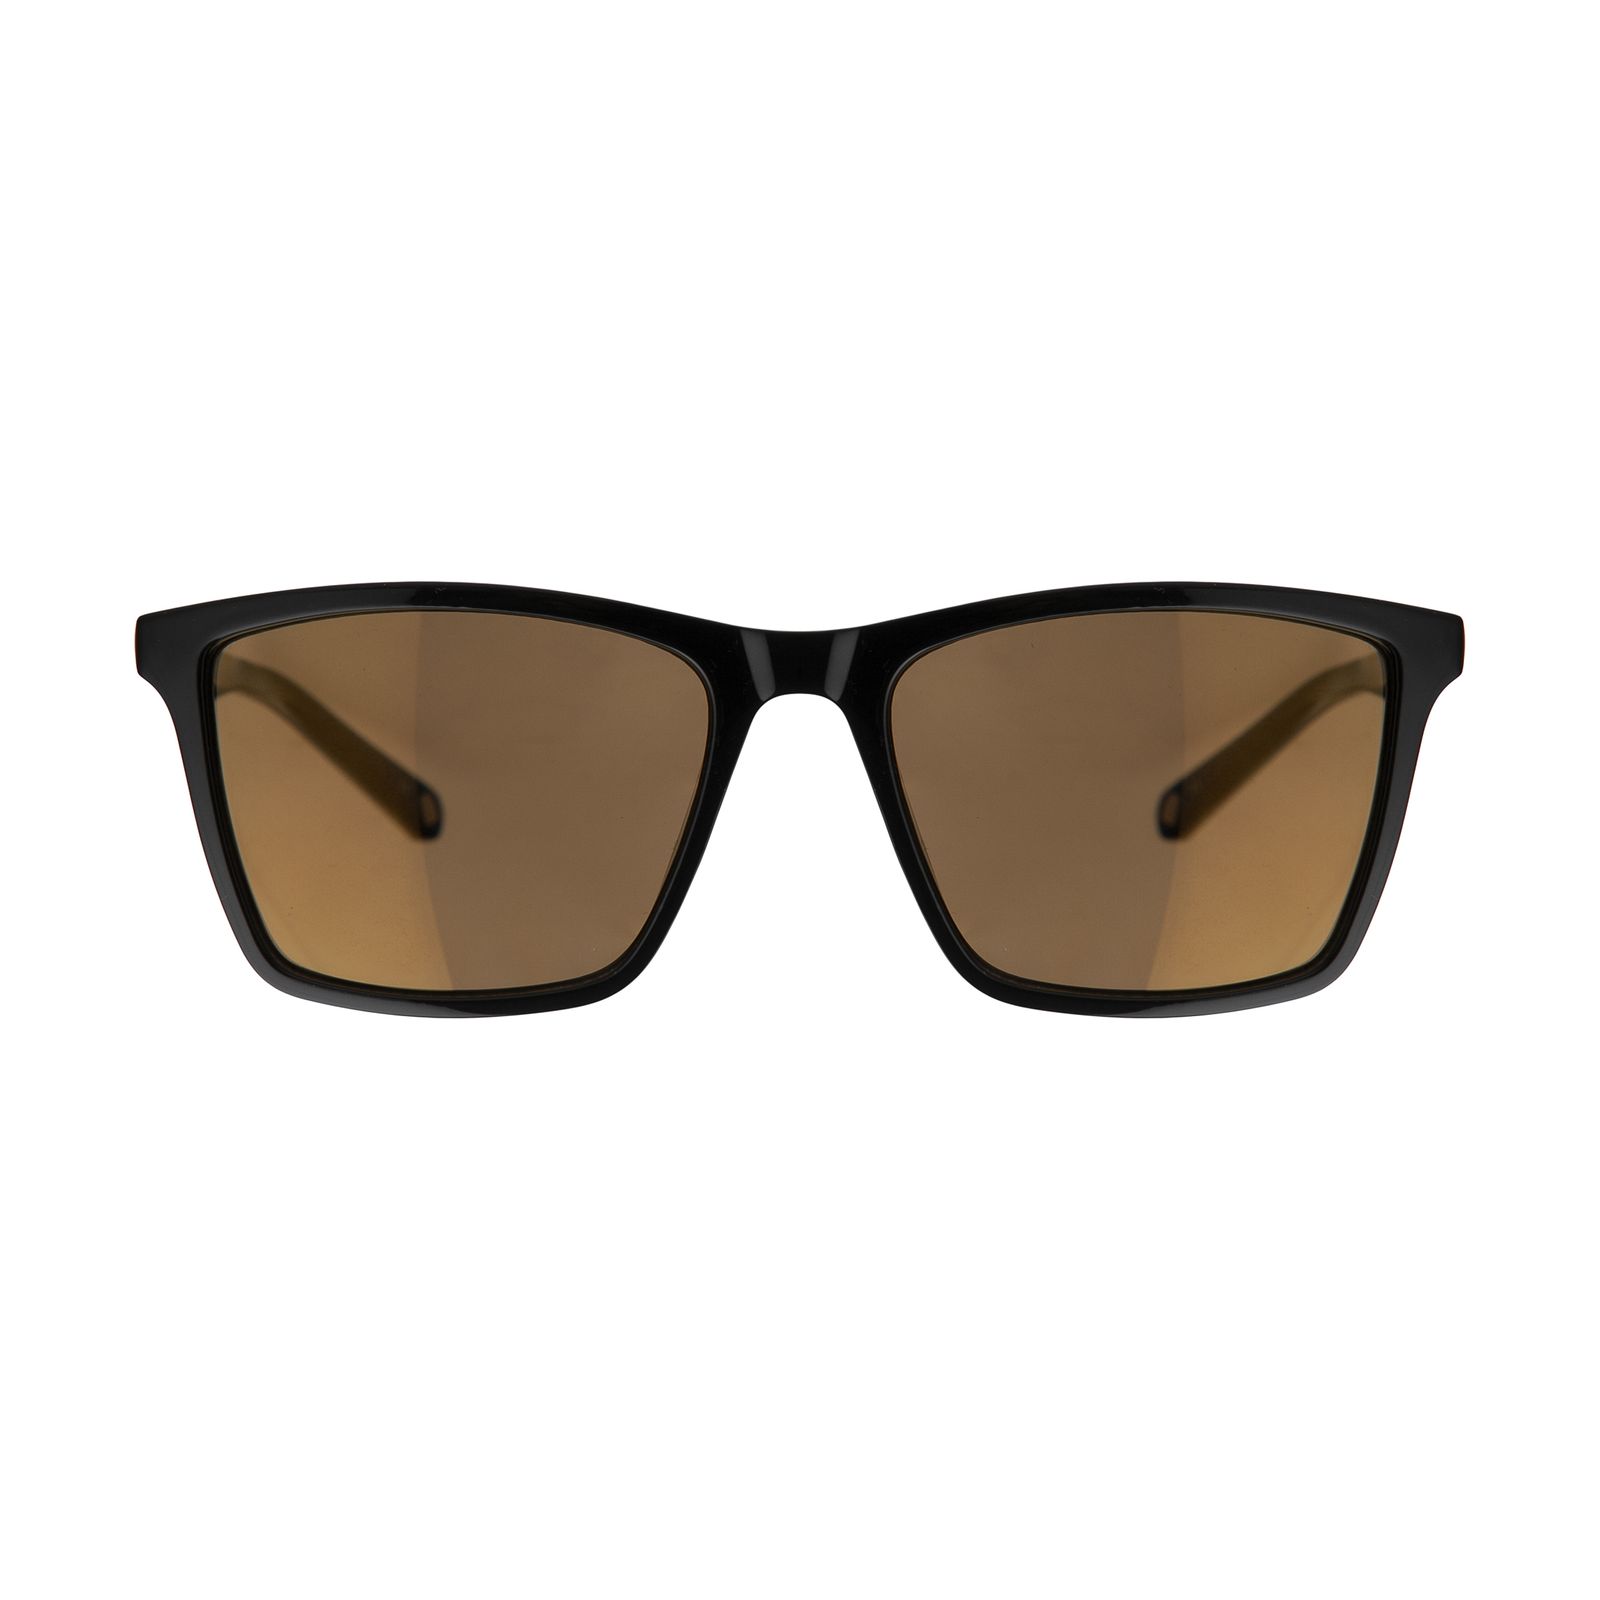 عینک آفتابی مردانه تد بیکر مدل TB 1456 012 -  - 1